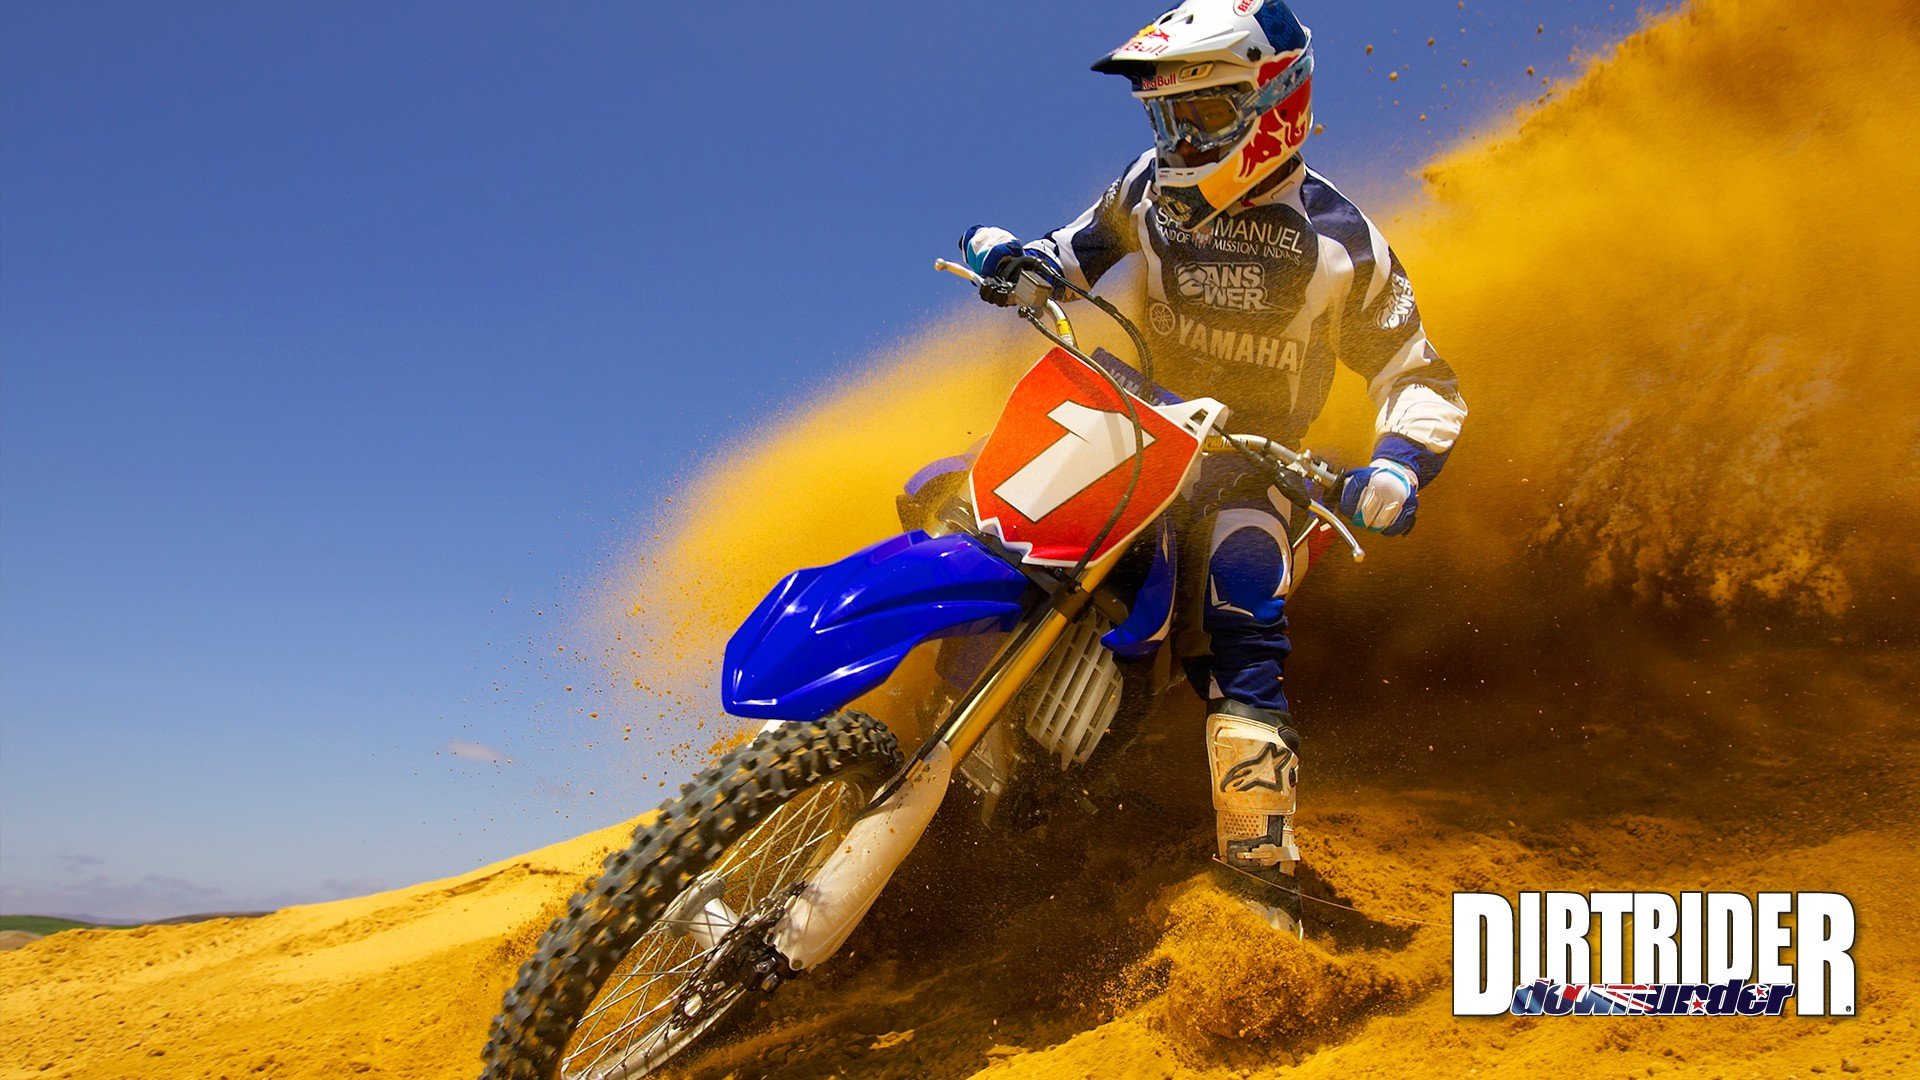 Motocross (Dirt Bike) background ID:378371 for full hd 1920x1080 desktop.